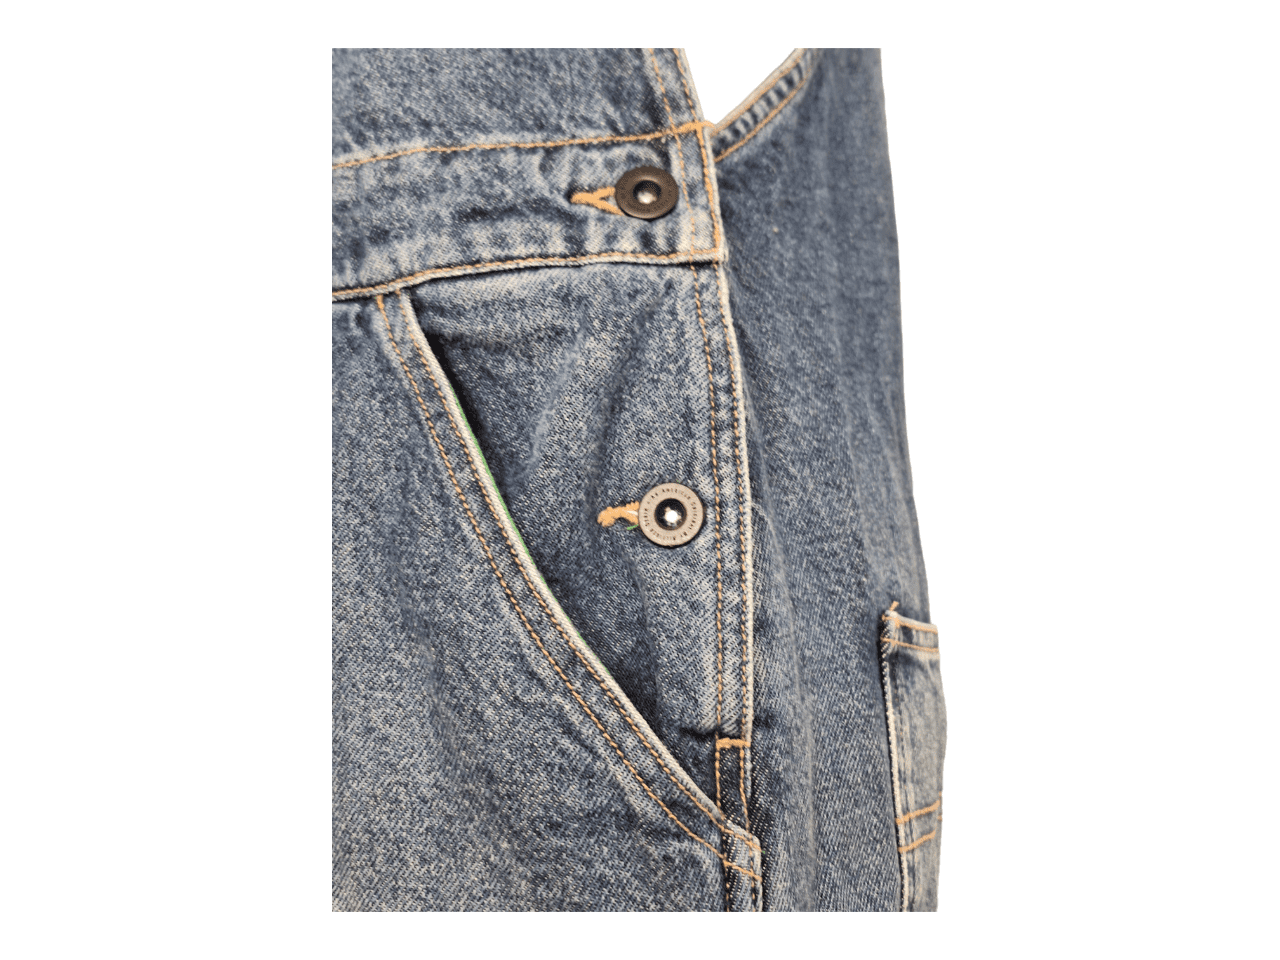 Salopette TOMMY HIFILGER Jeans clair poche intérieures vertes taille S